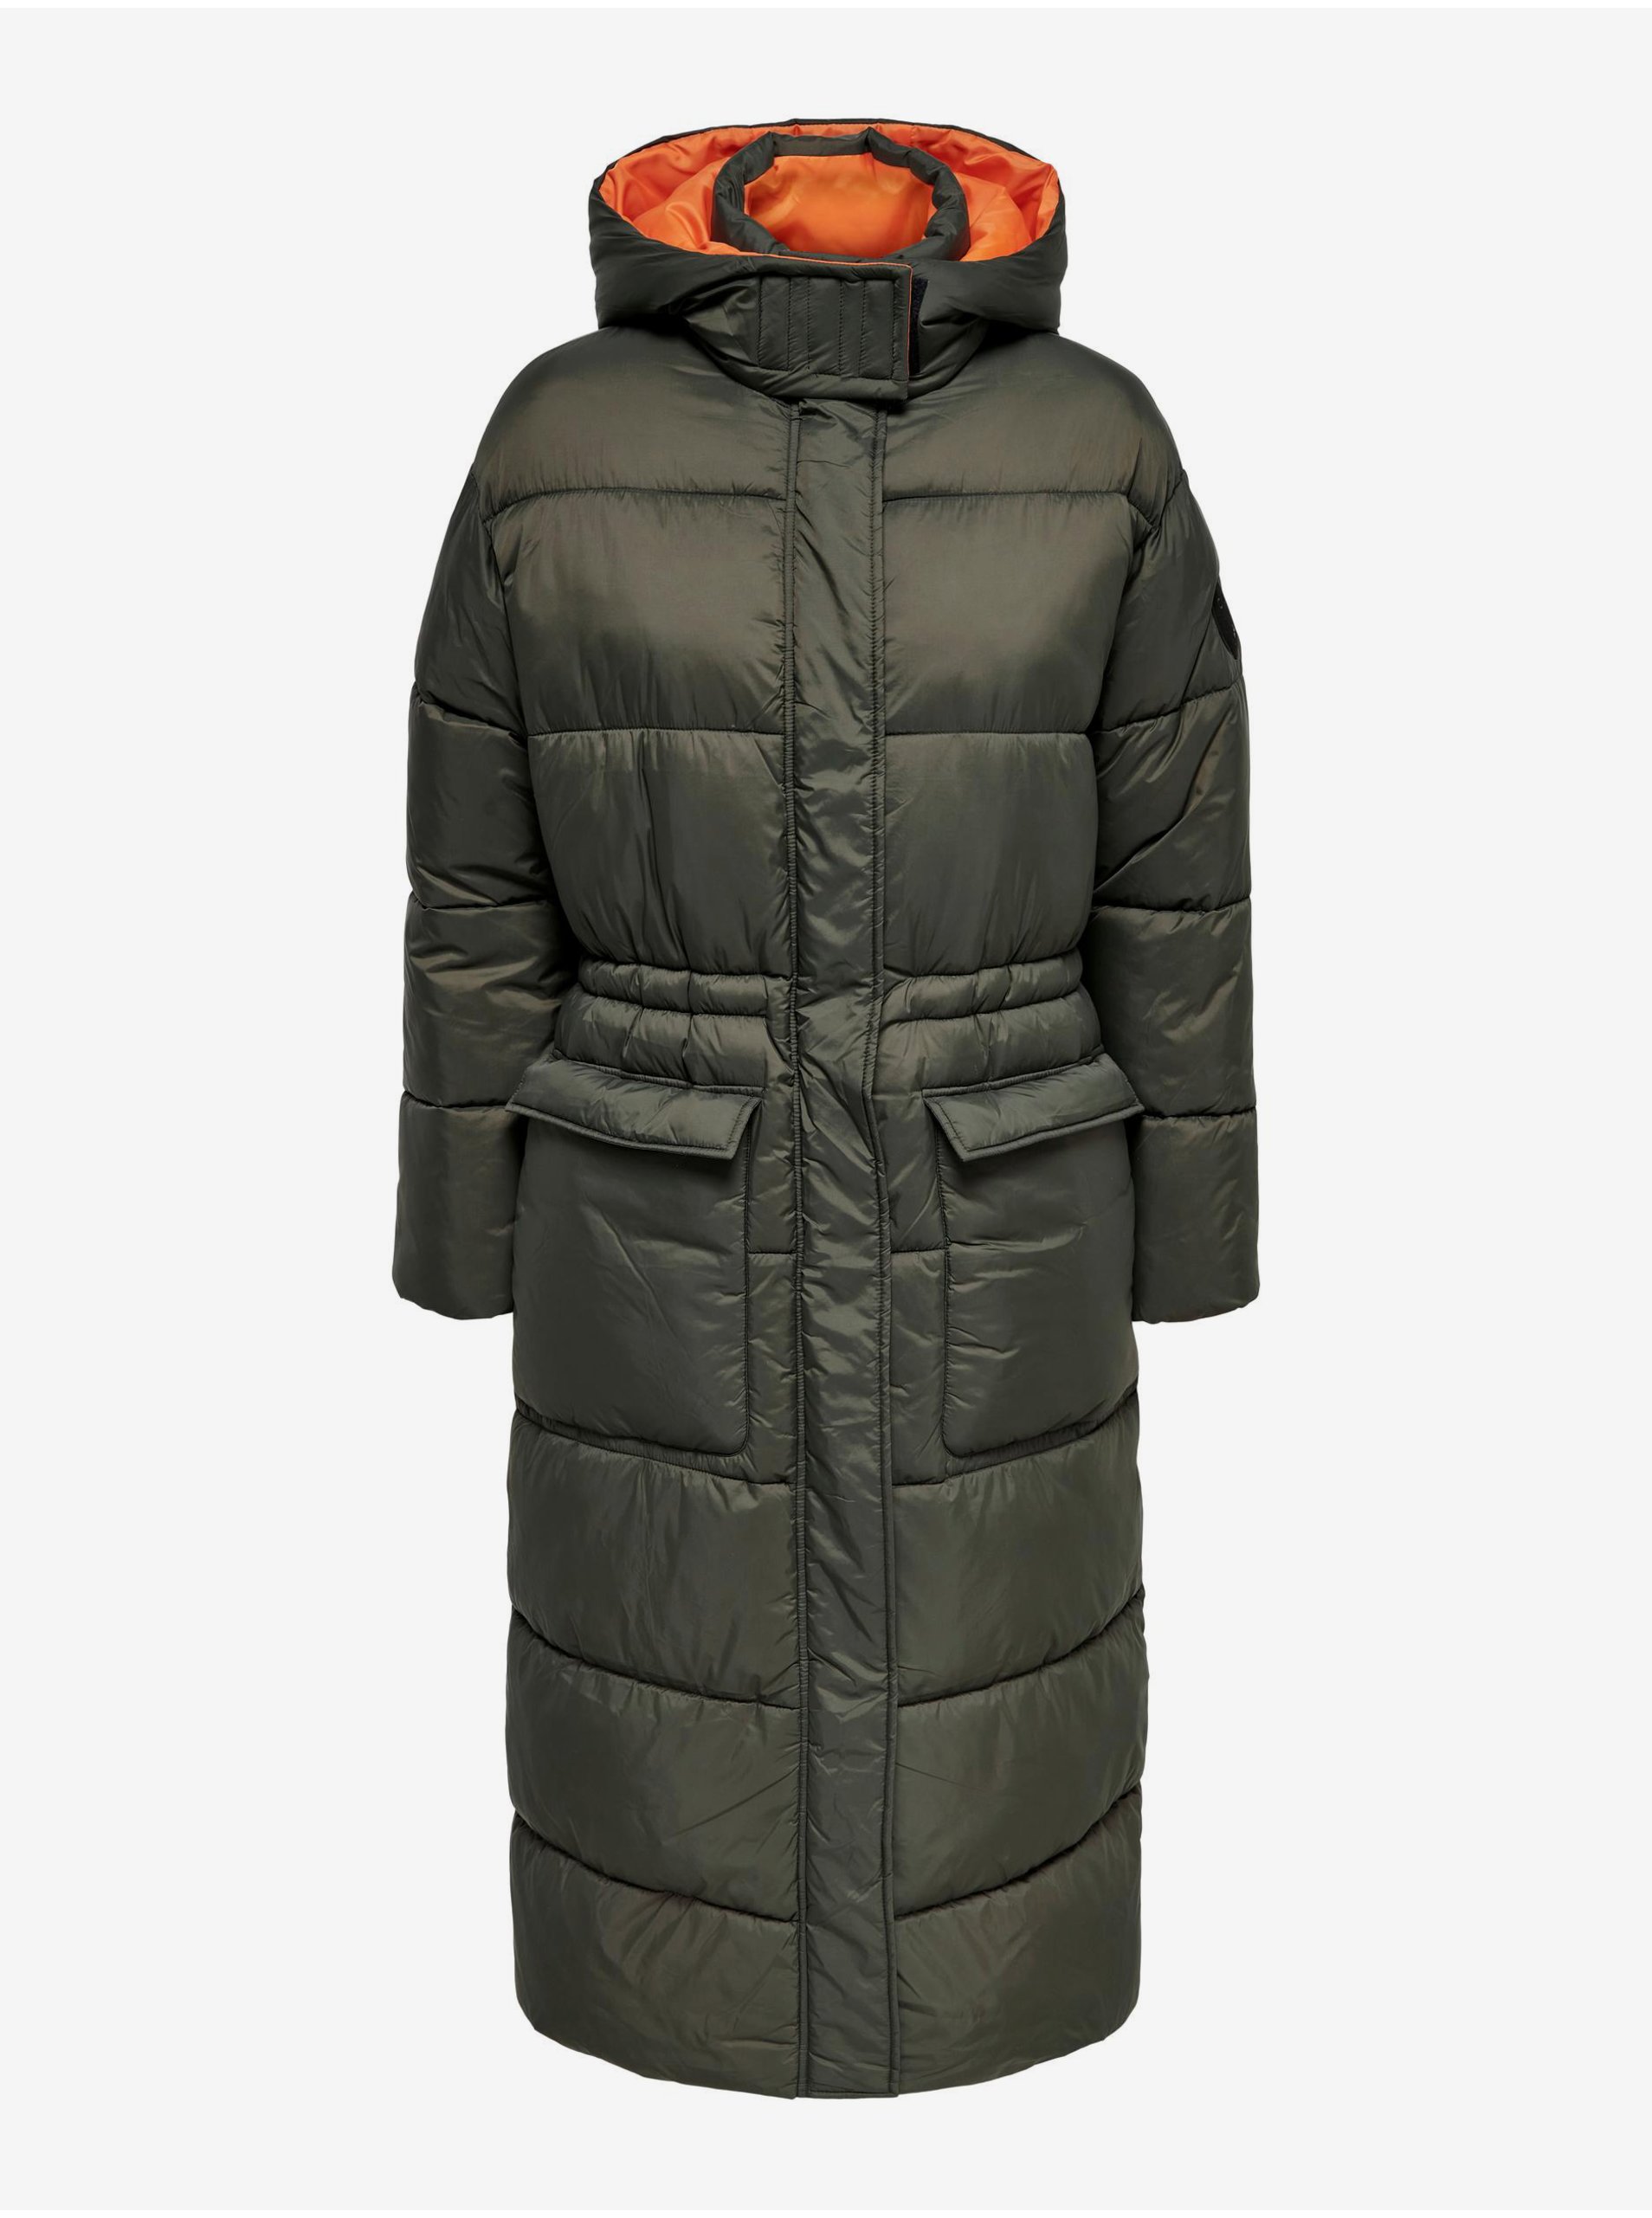 Lacno Kaki dámsky prešívaný zimný kabát s kapucňou ONLY Puk